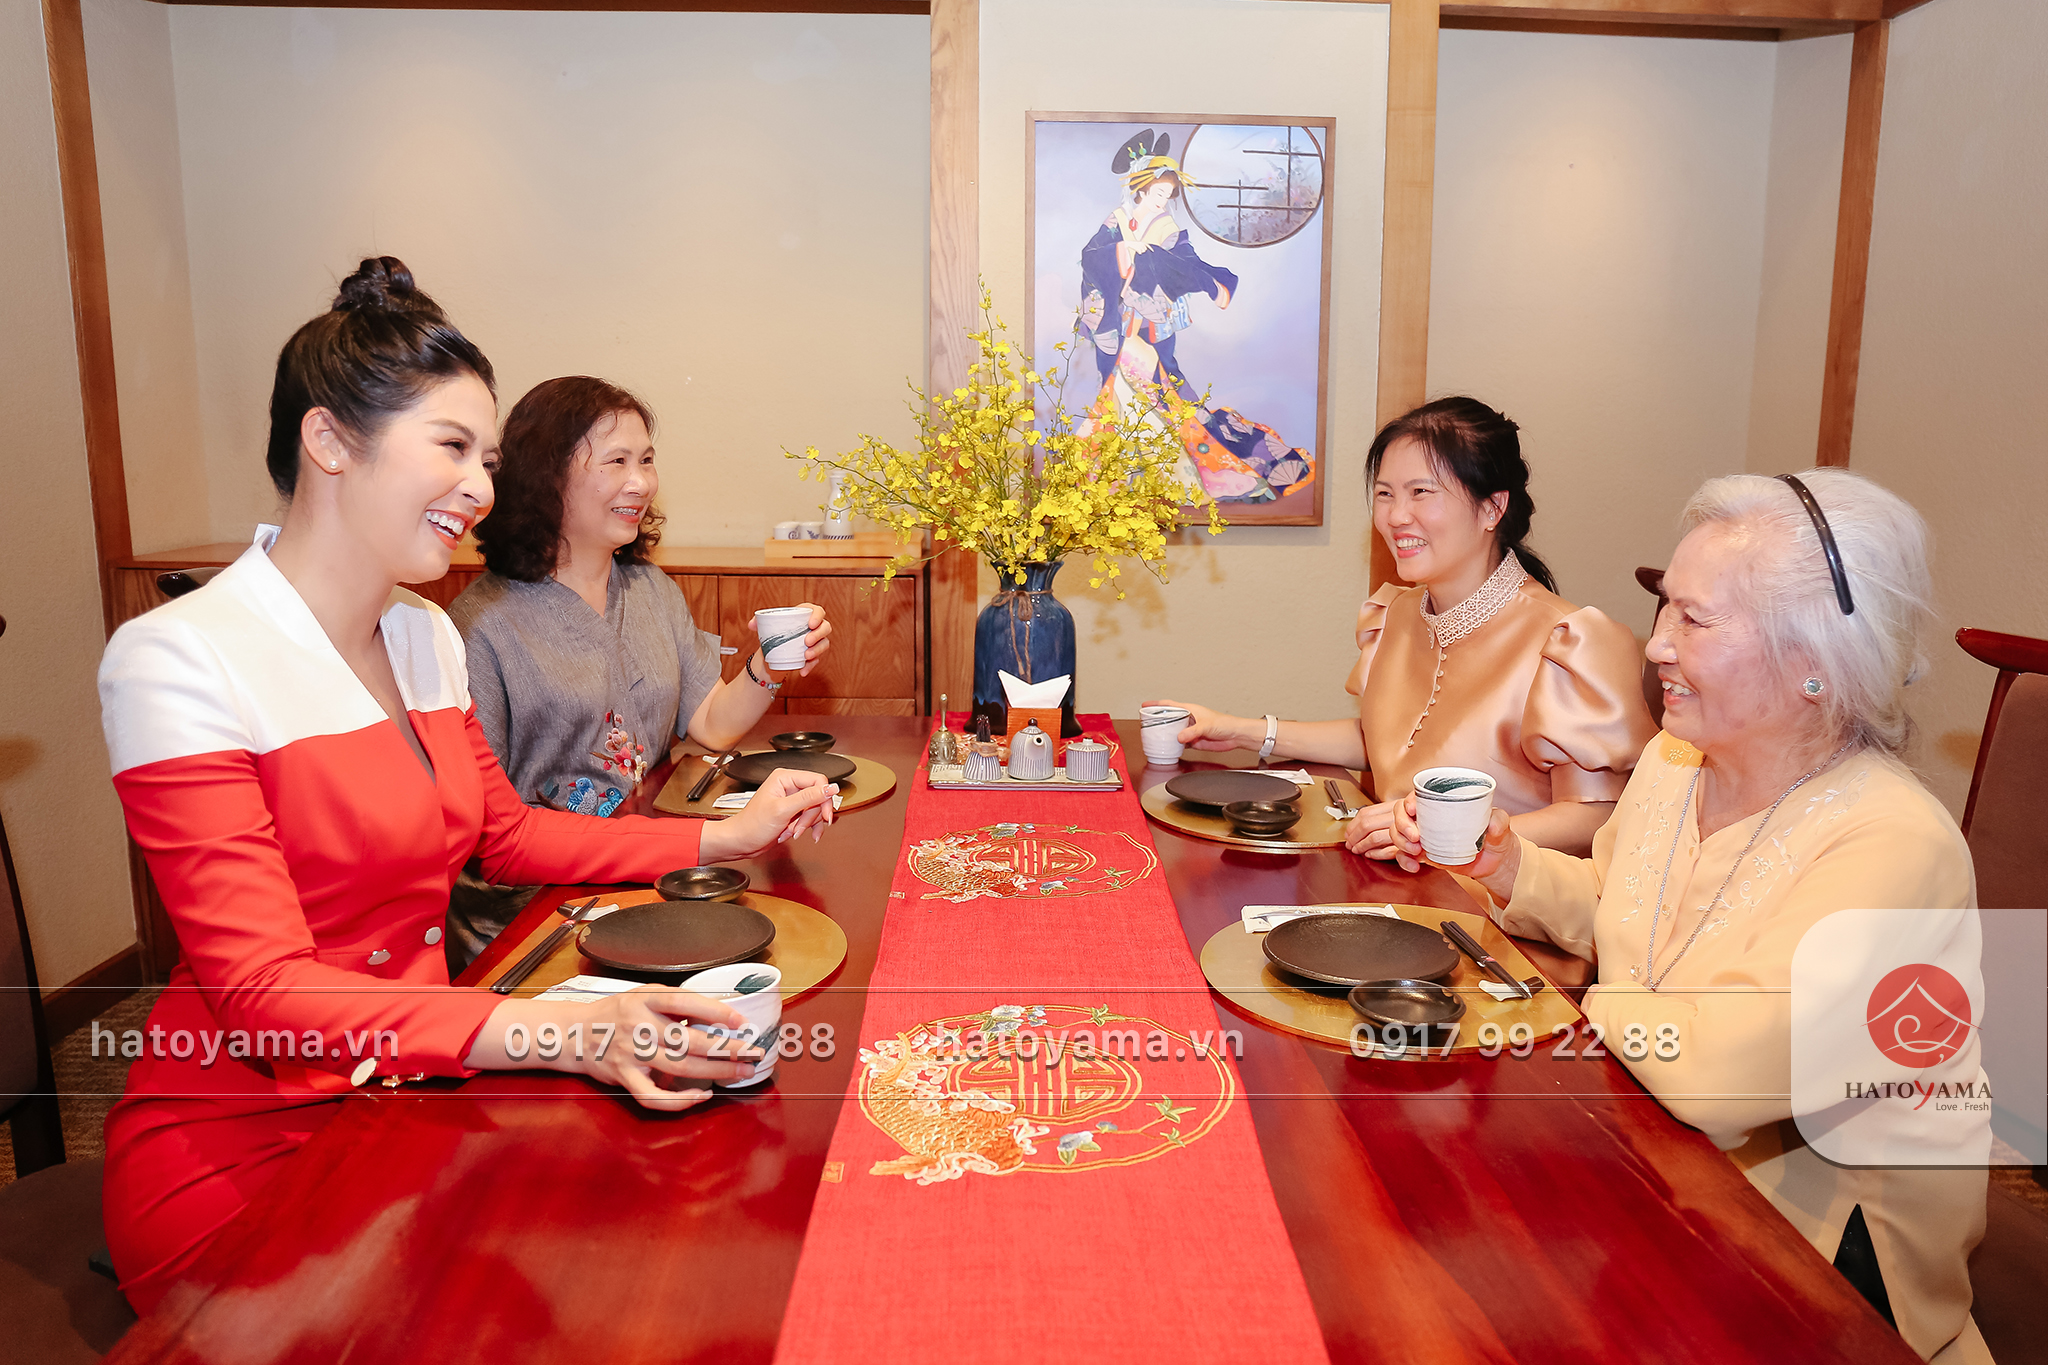 Hoa hậu Ngọc Hân tham dự sự kiện và dùng bữa tại Hatoyama